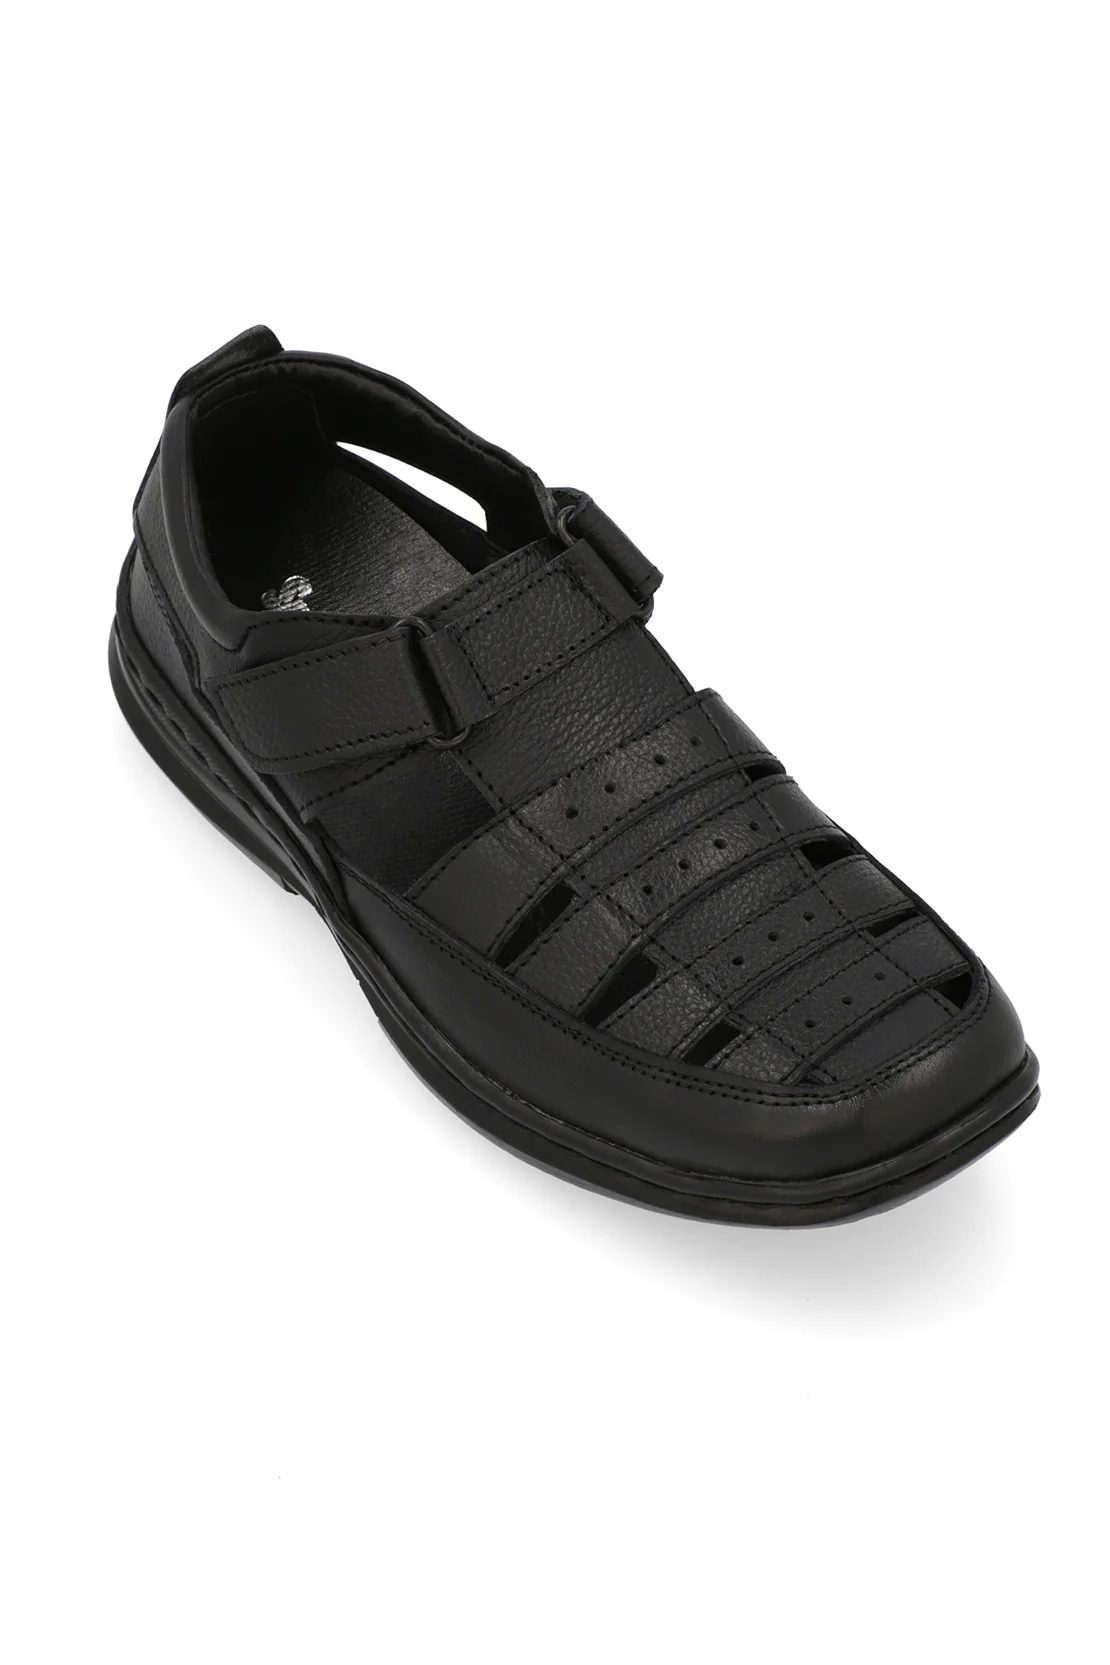 Black-Sandal-H00868-002